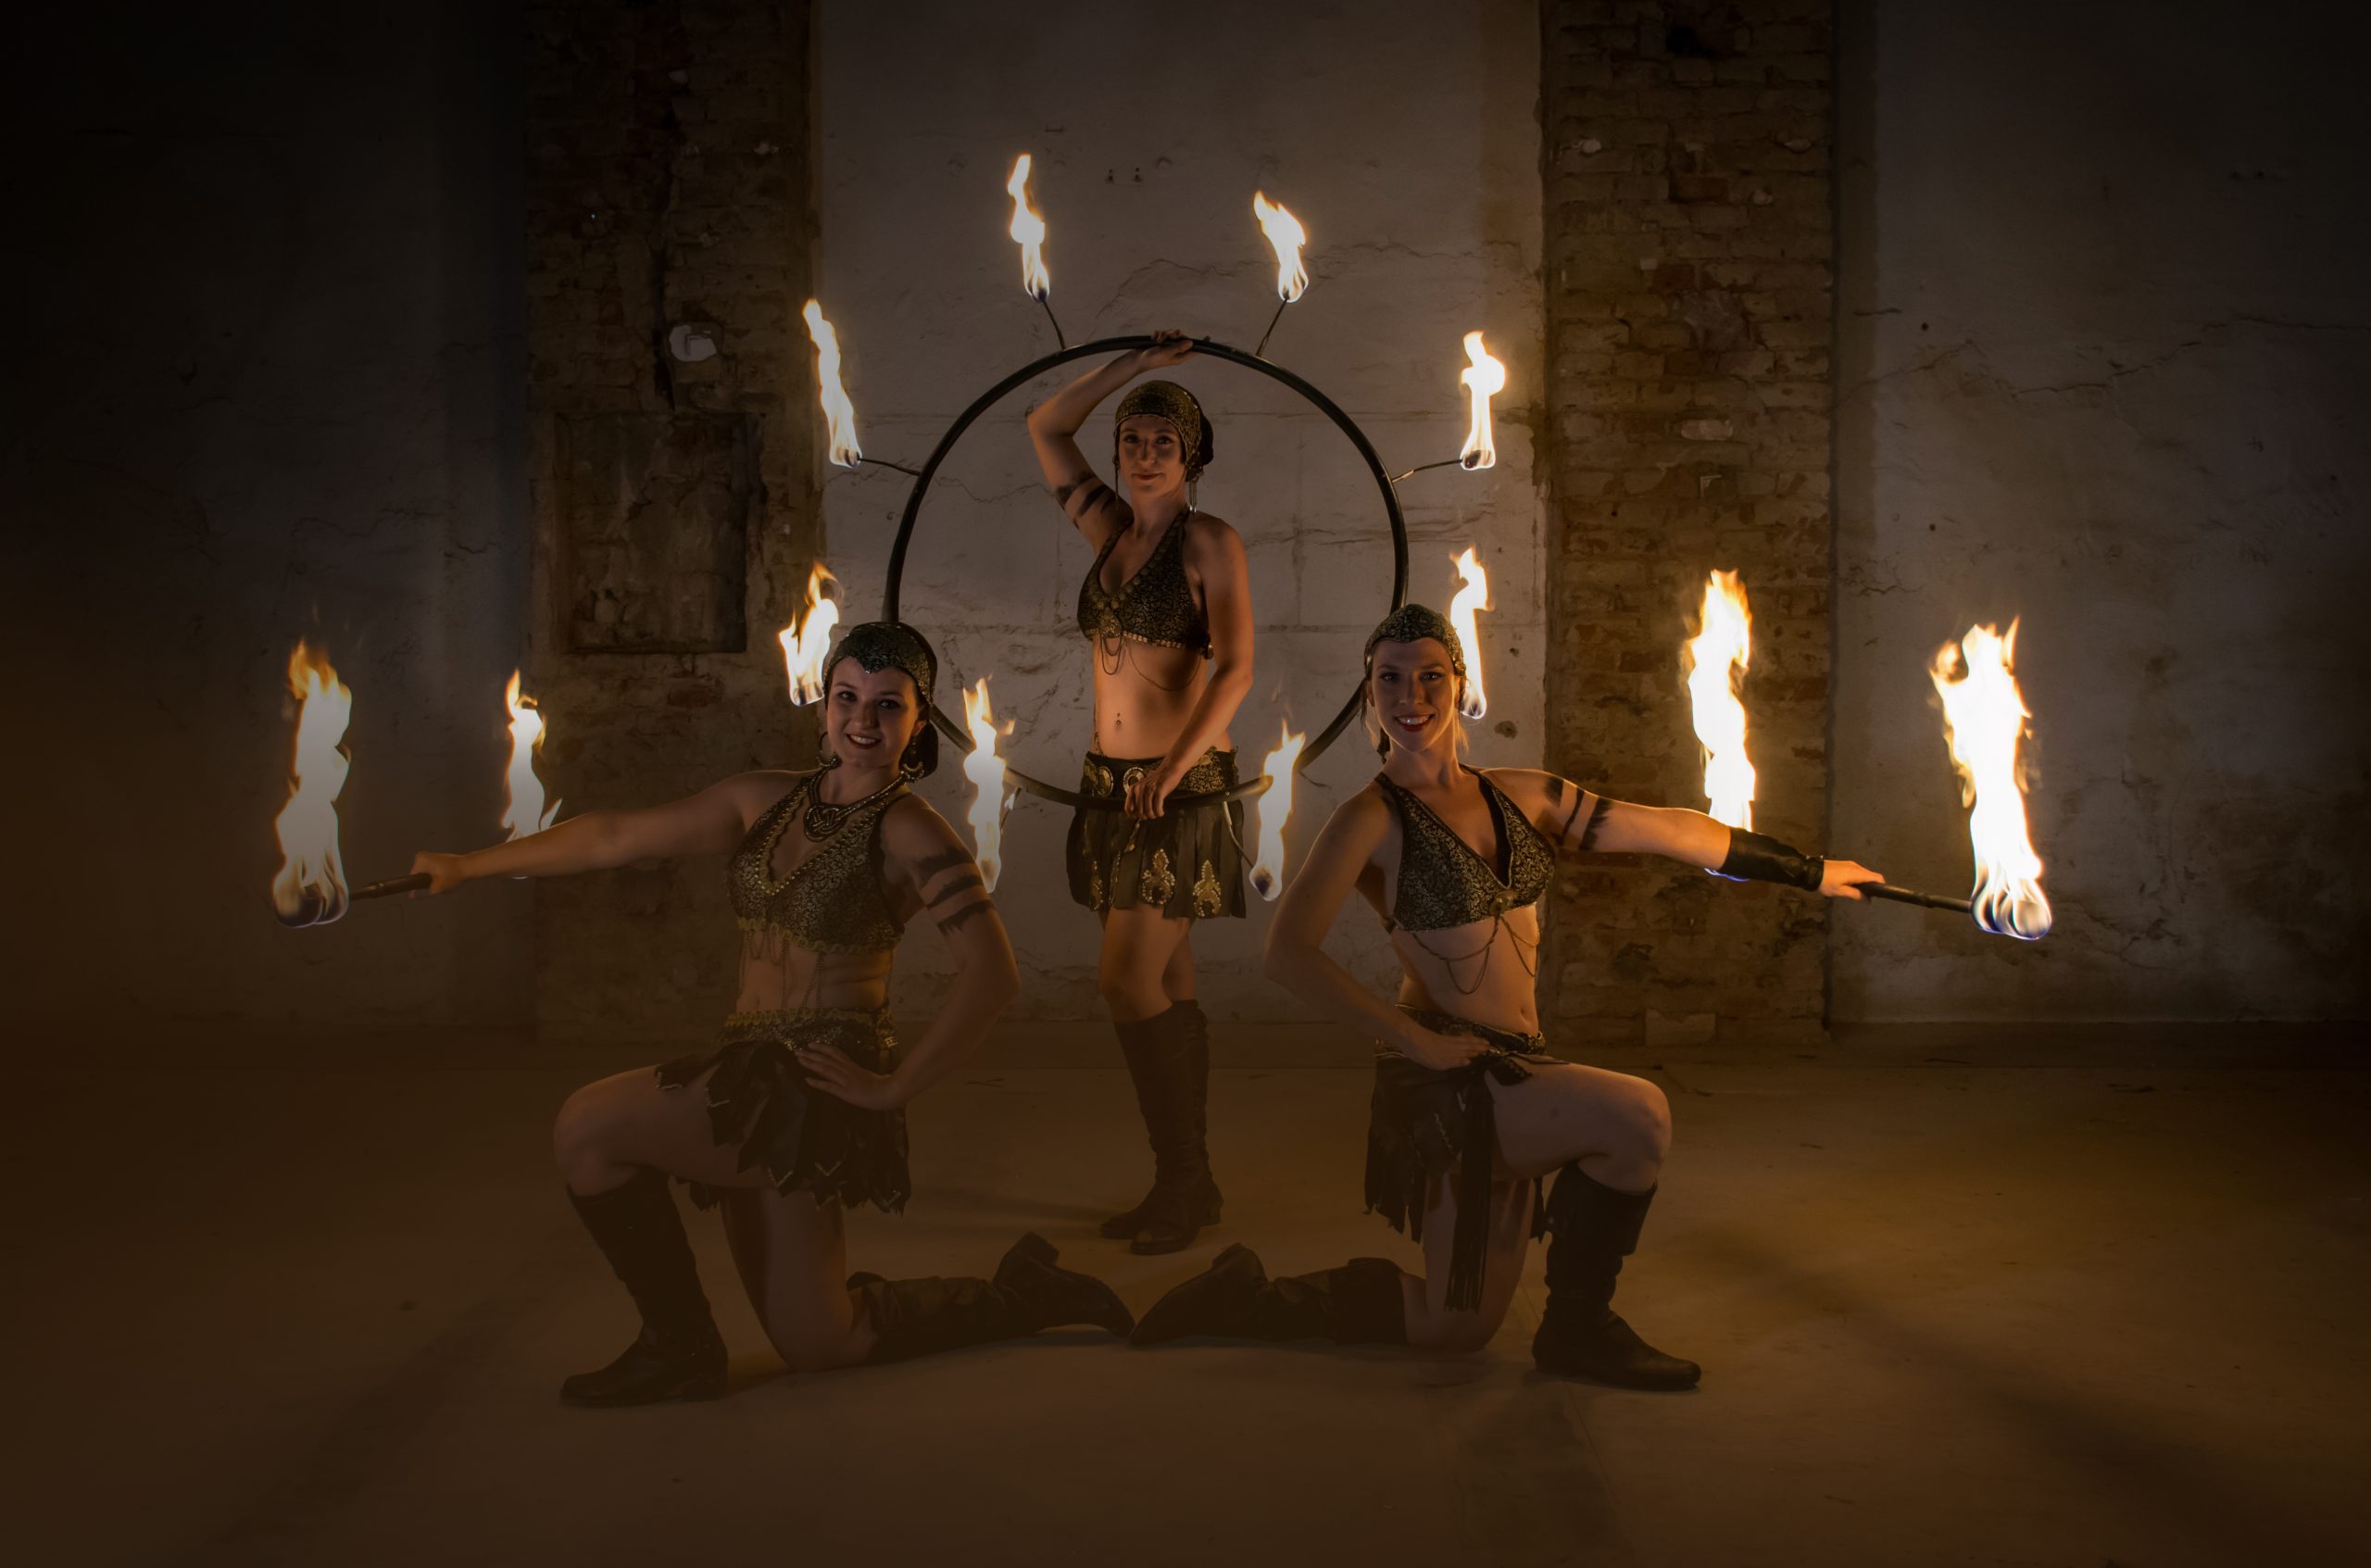 Fireshow Amazons - Ilusias